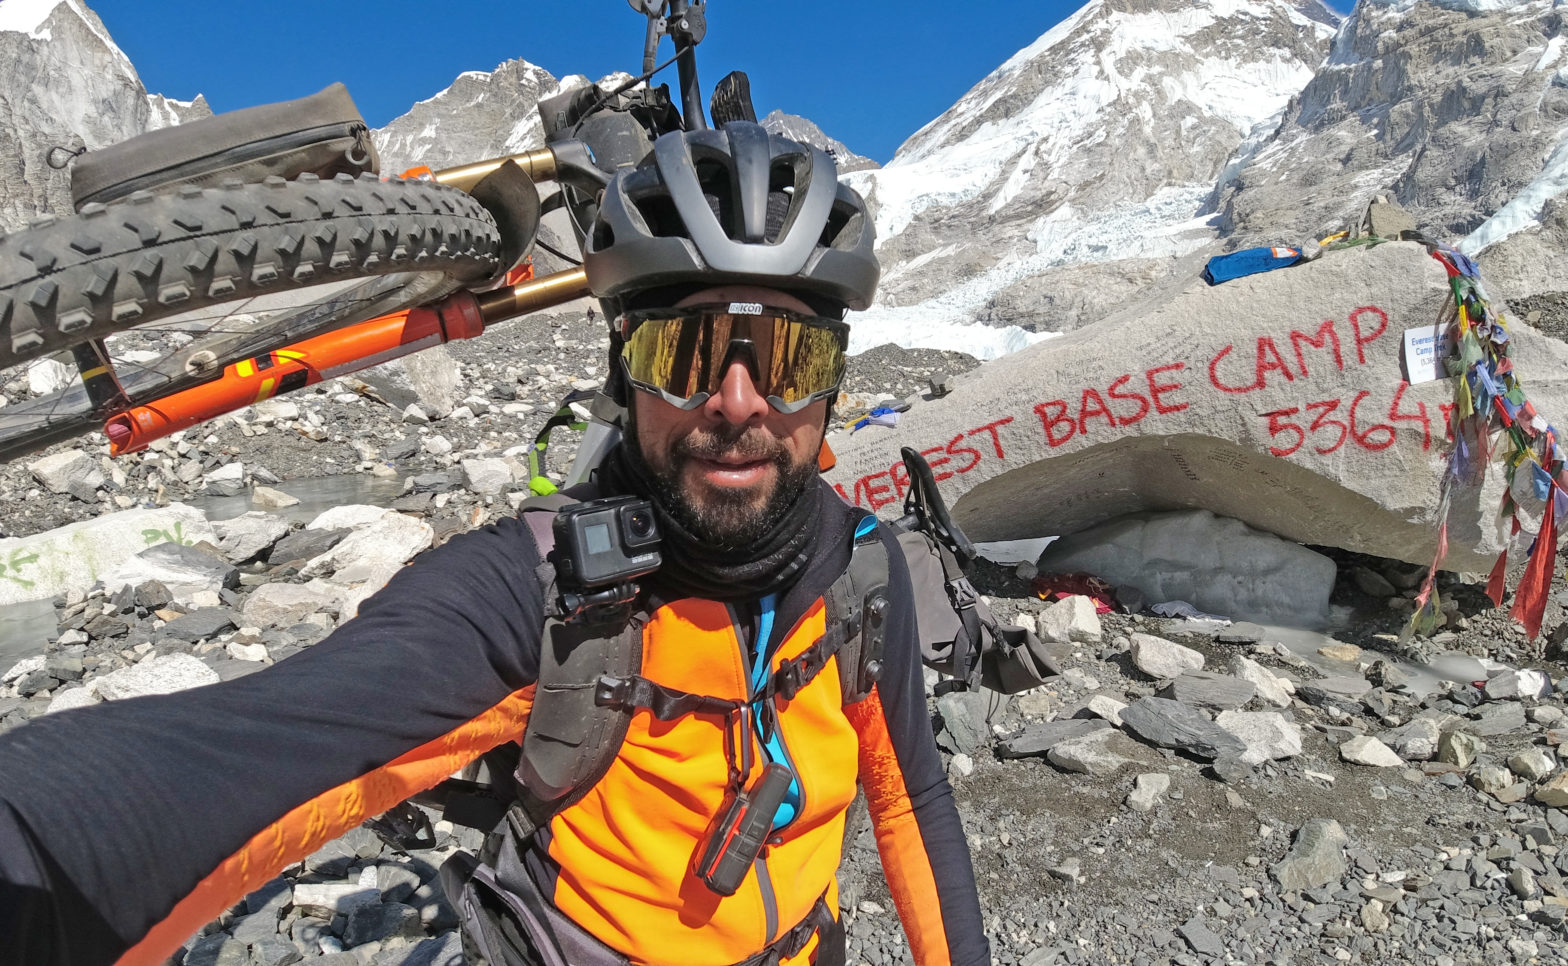 Solo-Winterdurchquerung des Himalayas mit dem Mountainbike erfolgreich